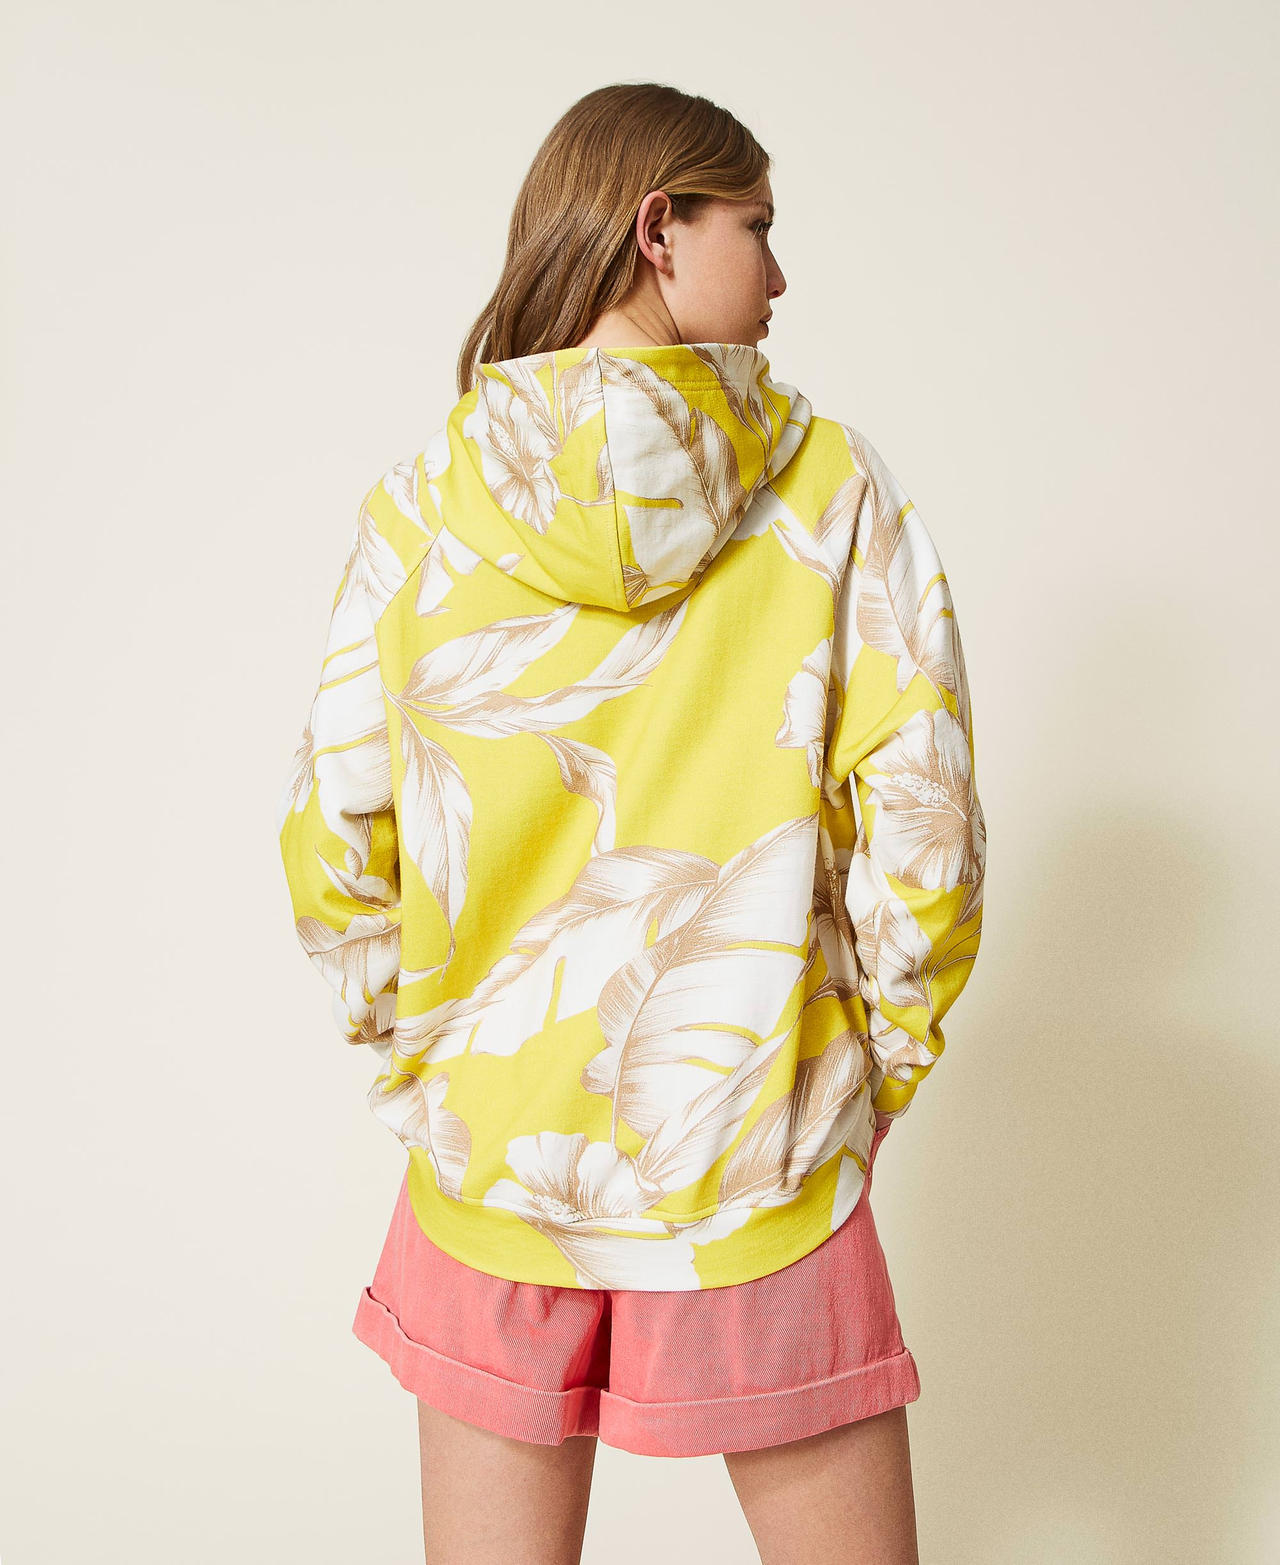 Sweat-shirt à capuche floral Imprimé Hibiscus Jaune/Blanc « Neige » Femme 221TT2320-03